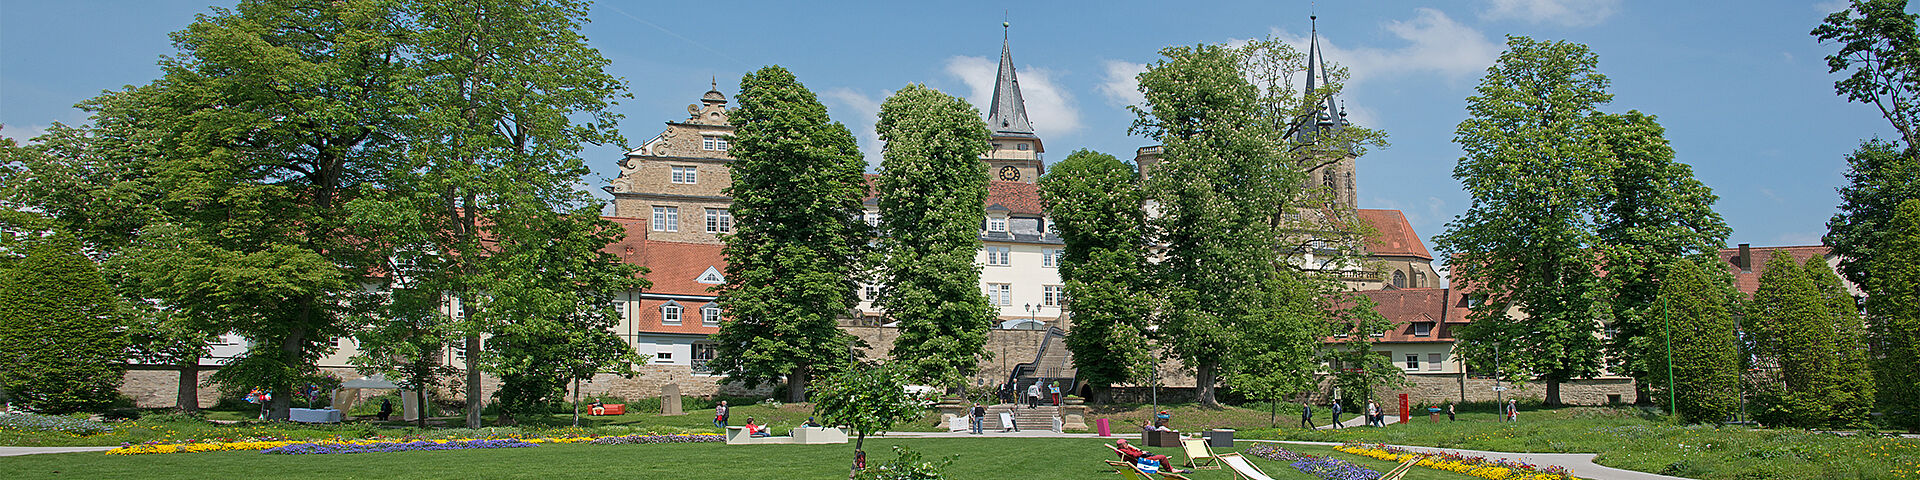 Der sommerliche Hofgarten in Öhringen ist zu sehen. Im Hintergrund hinter hohen Bäumen sieht man das Schloss und die Stiftskirche.